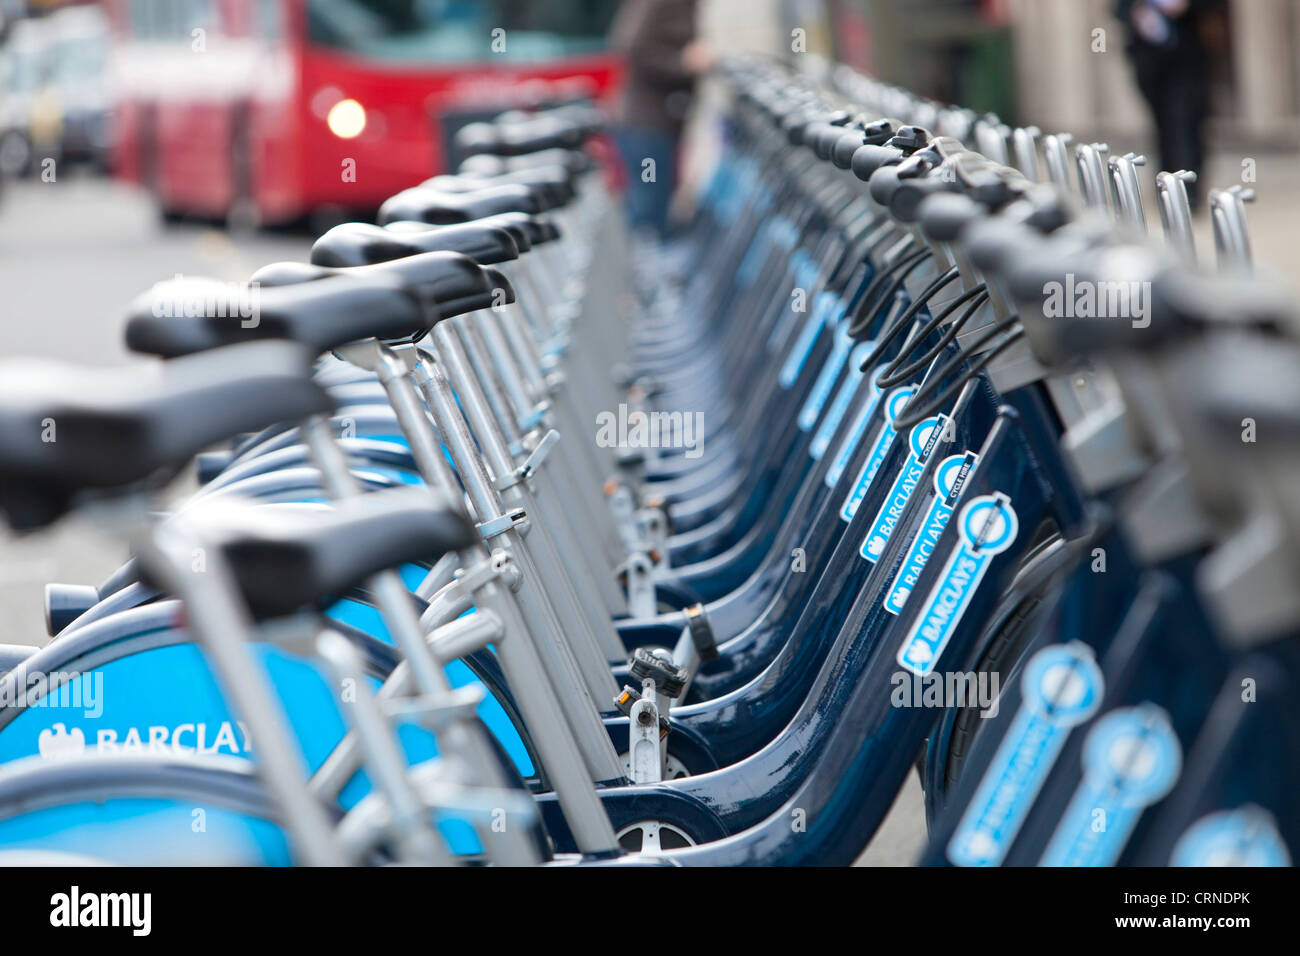 Une rangée de Barclays Cycle Hire Scheme vélos dans une station d'accueil. Banque D'Images